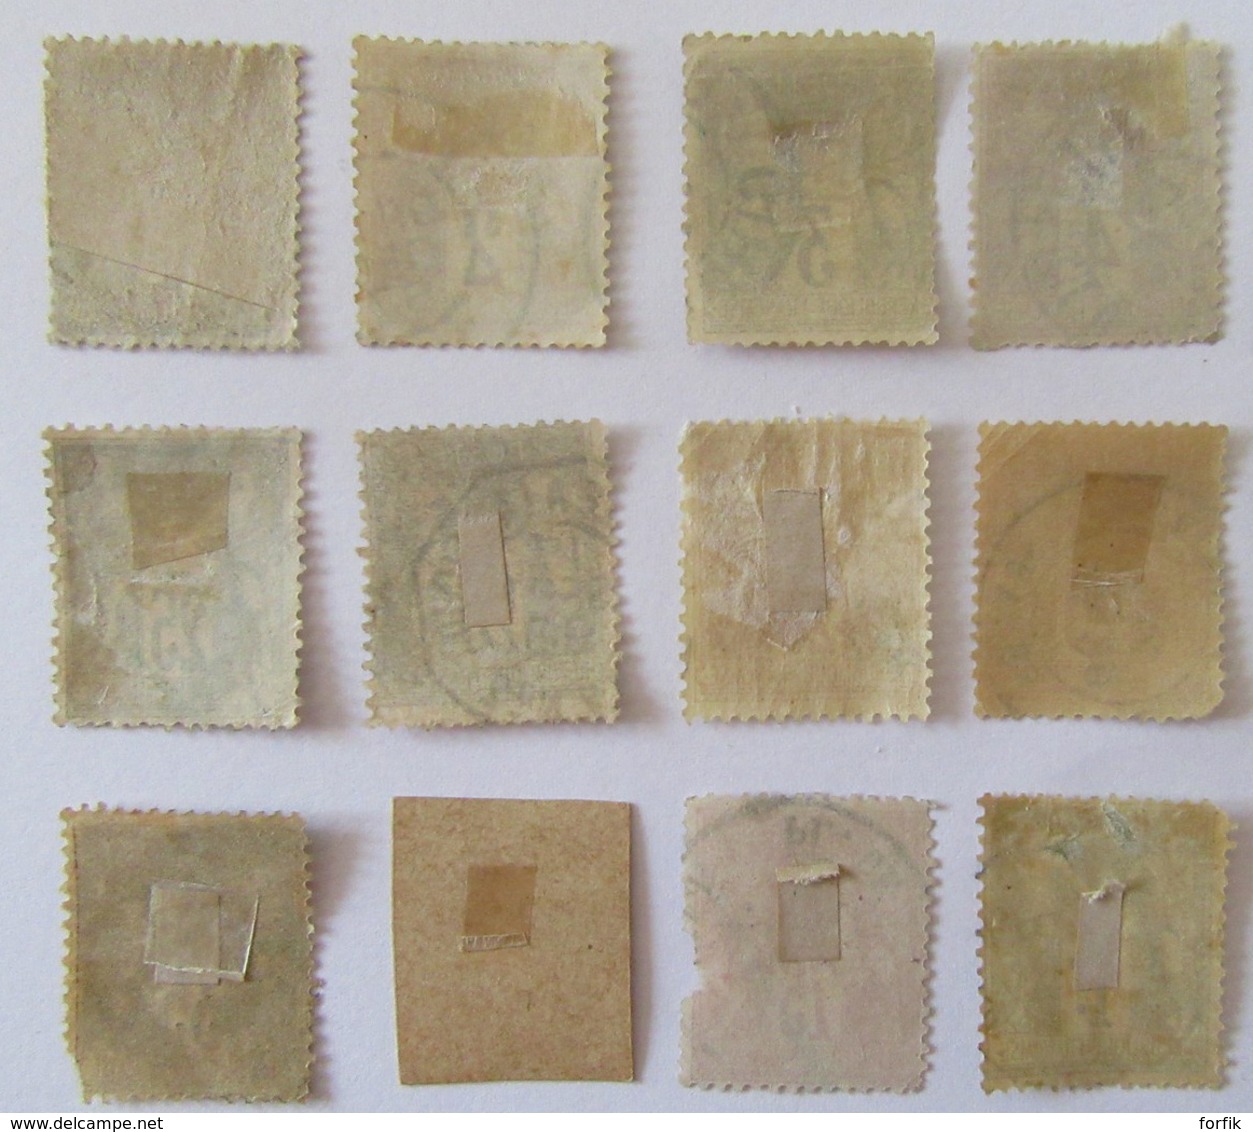 France - Période Classique et semi-moderne - Lot de timbres dont Sage, Merson, Croix-Rouge YT n°156 + taxe - Oblitérés